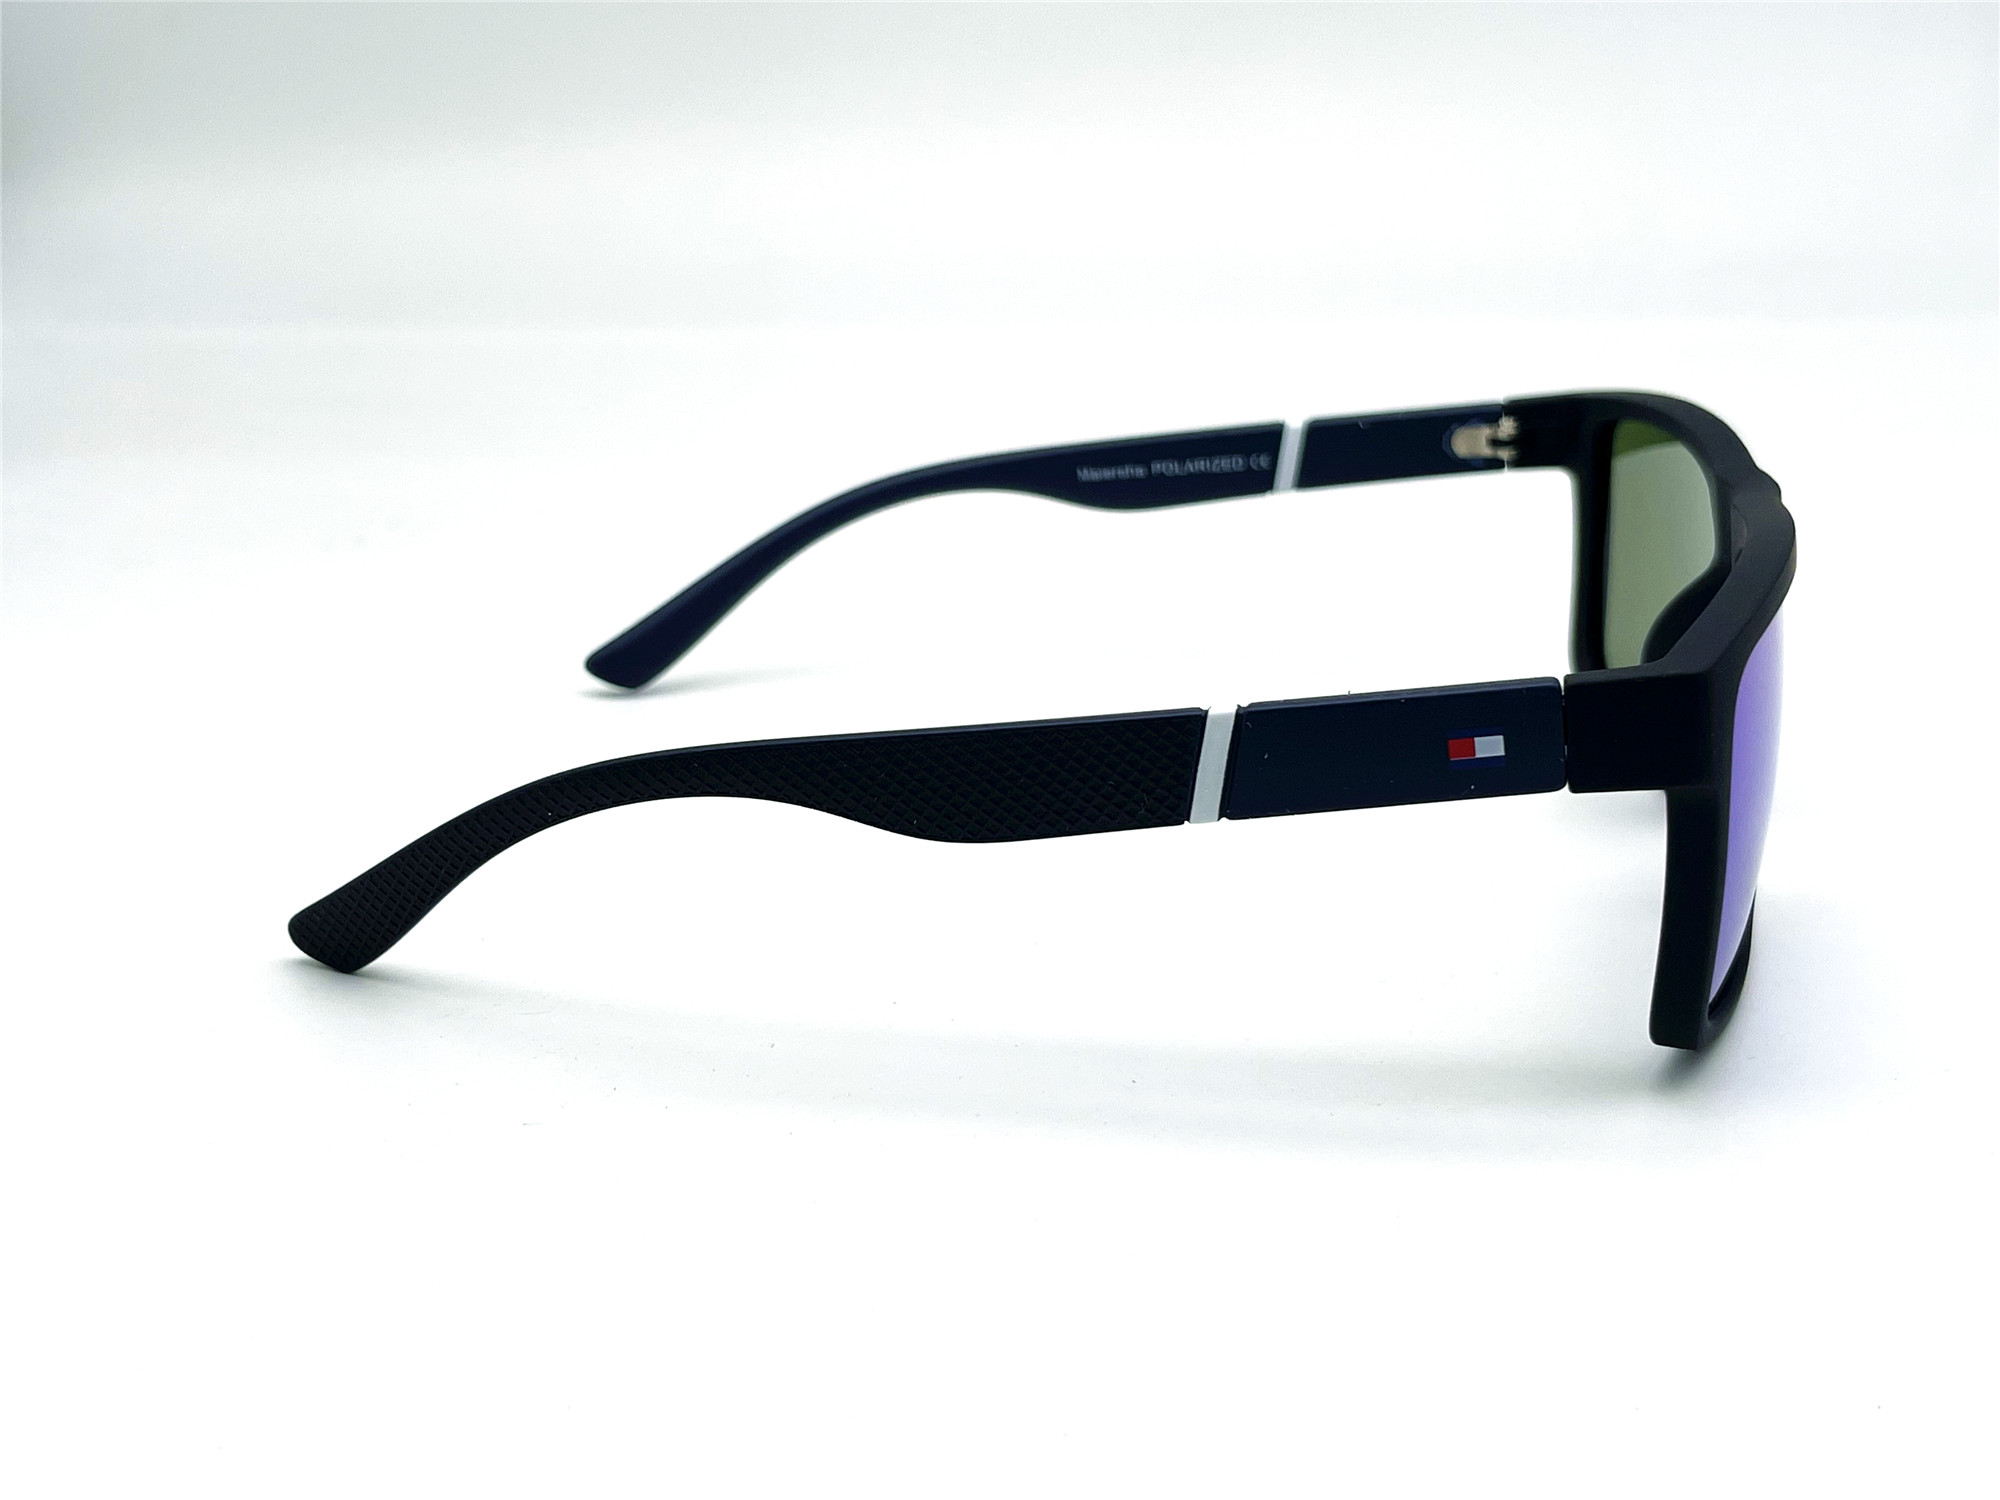  Солнцезащитные очки картинка Мужские Maiersha Polarized Стандартные P5055-C2 